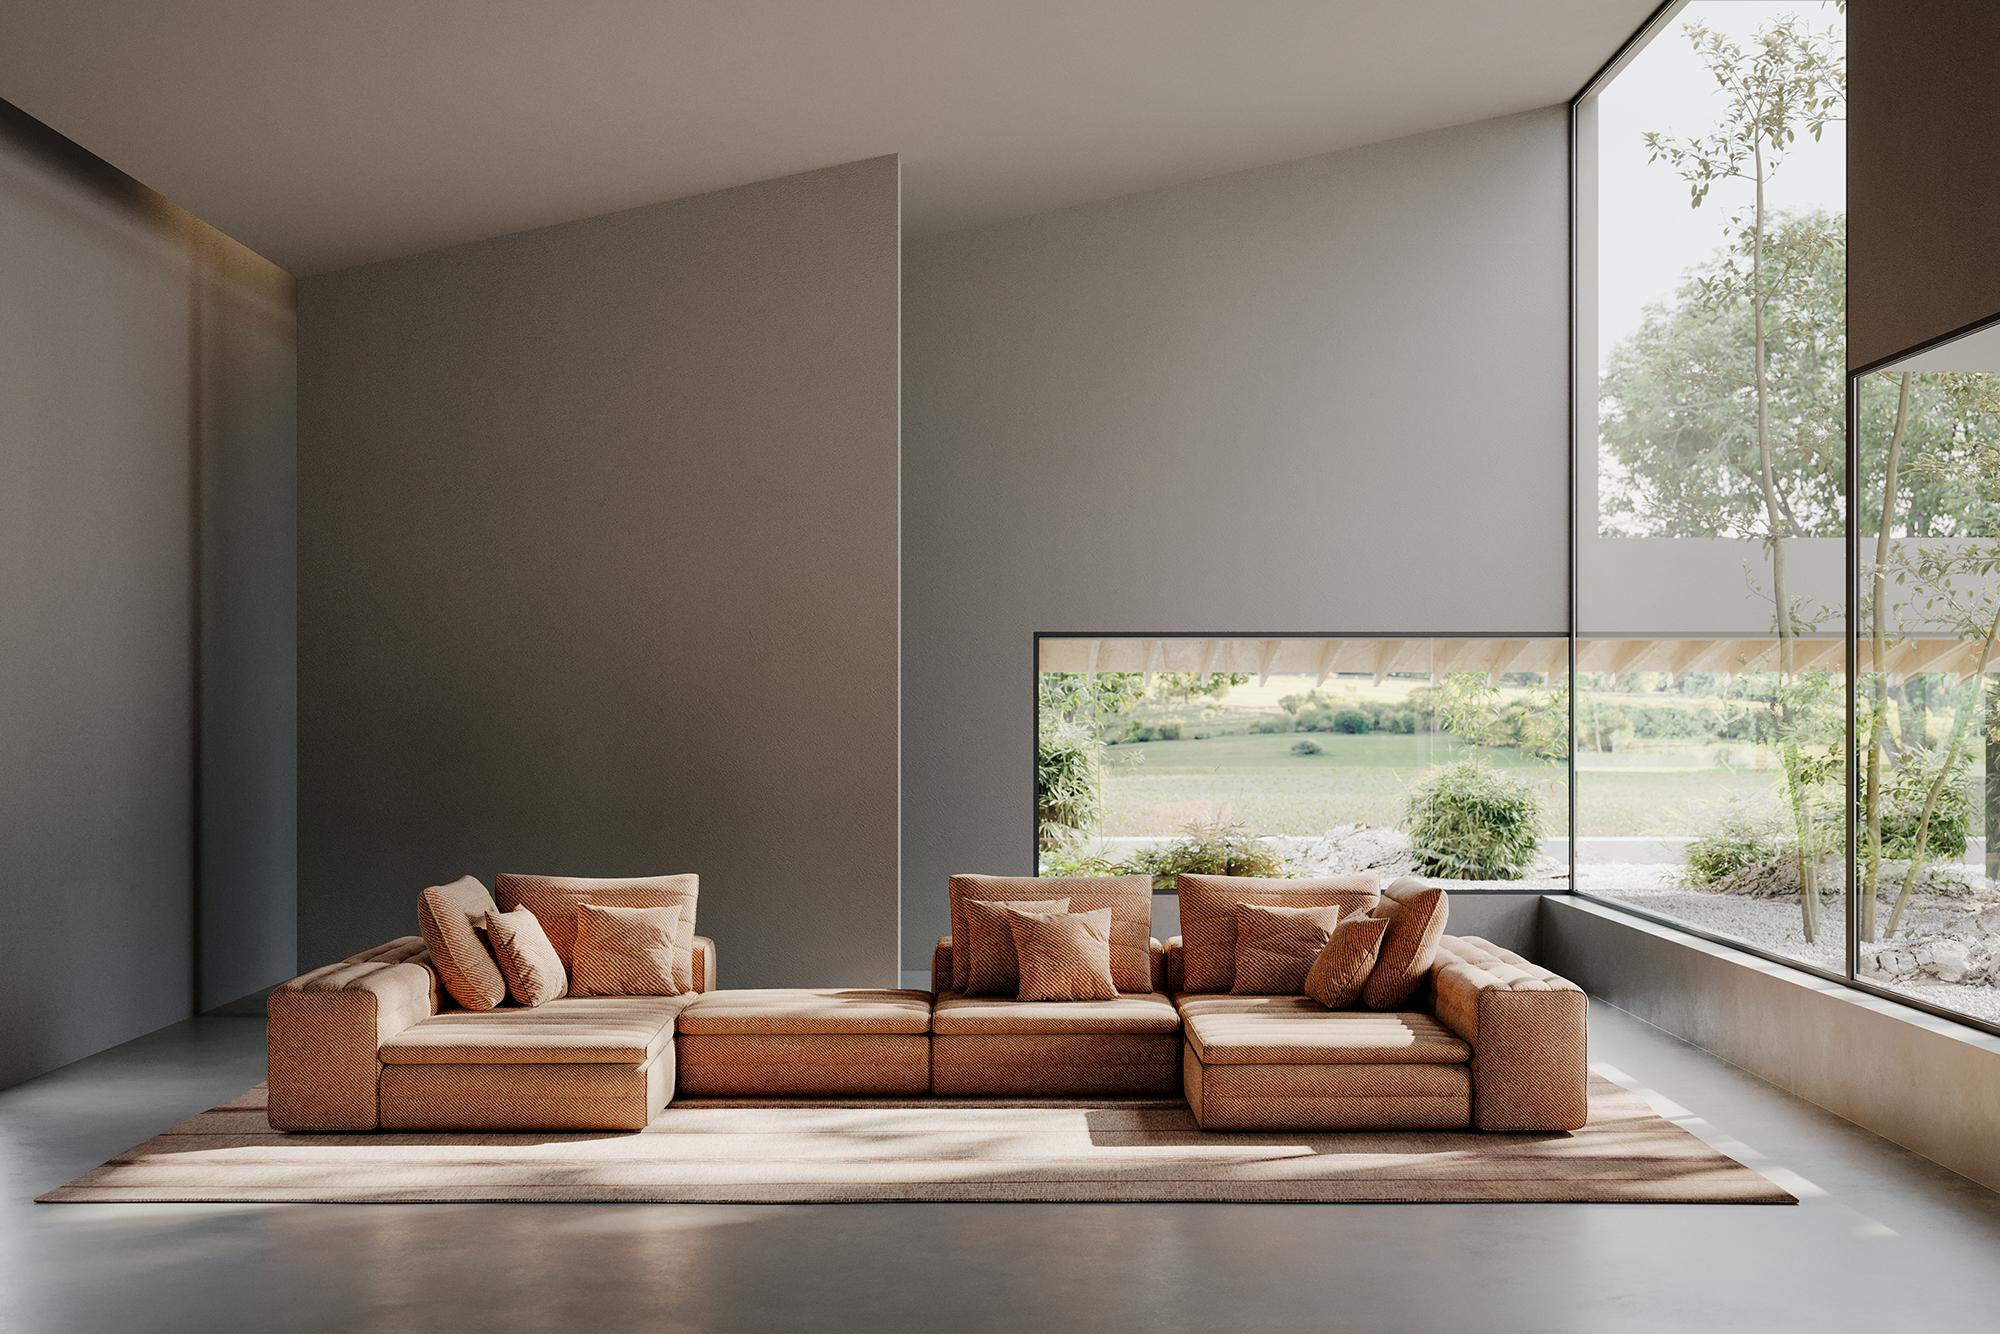 Samet ist ein modulares Sofa ohne Regeln, ein multifunktionales und konfigurierbares Produkt, das den Menschen als aktives Subjekt in die Gestaltung seines eigenen Raums einbezieht und ihn ermutigt, mit neuen Nutzungsformen zu experimentieren.